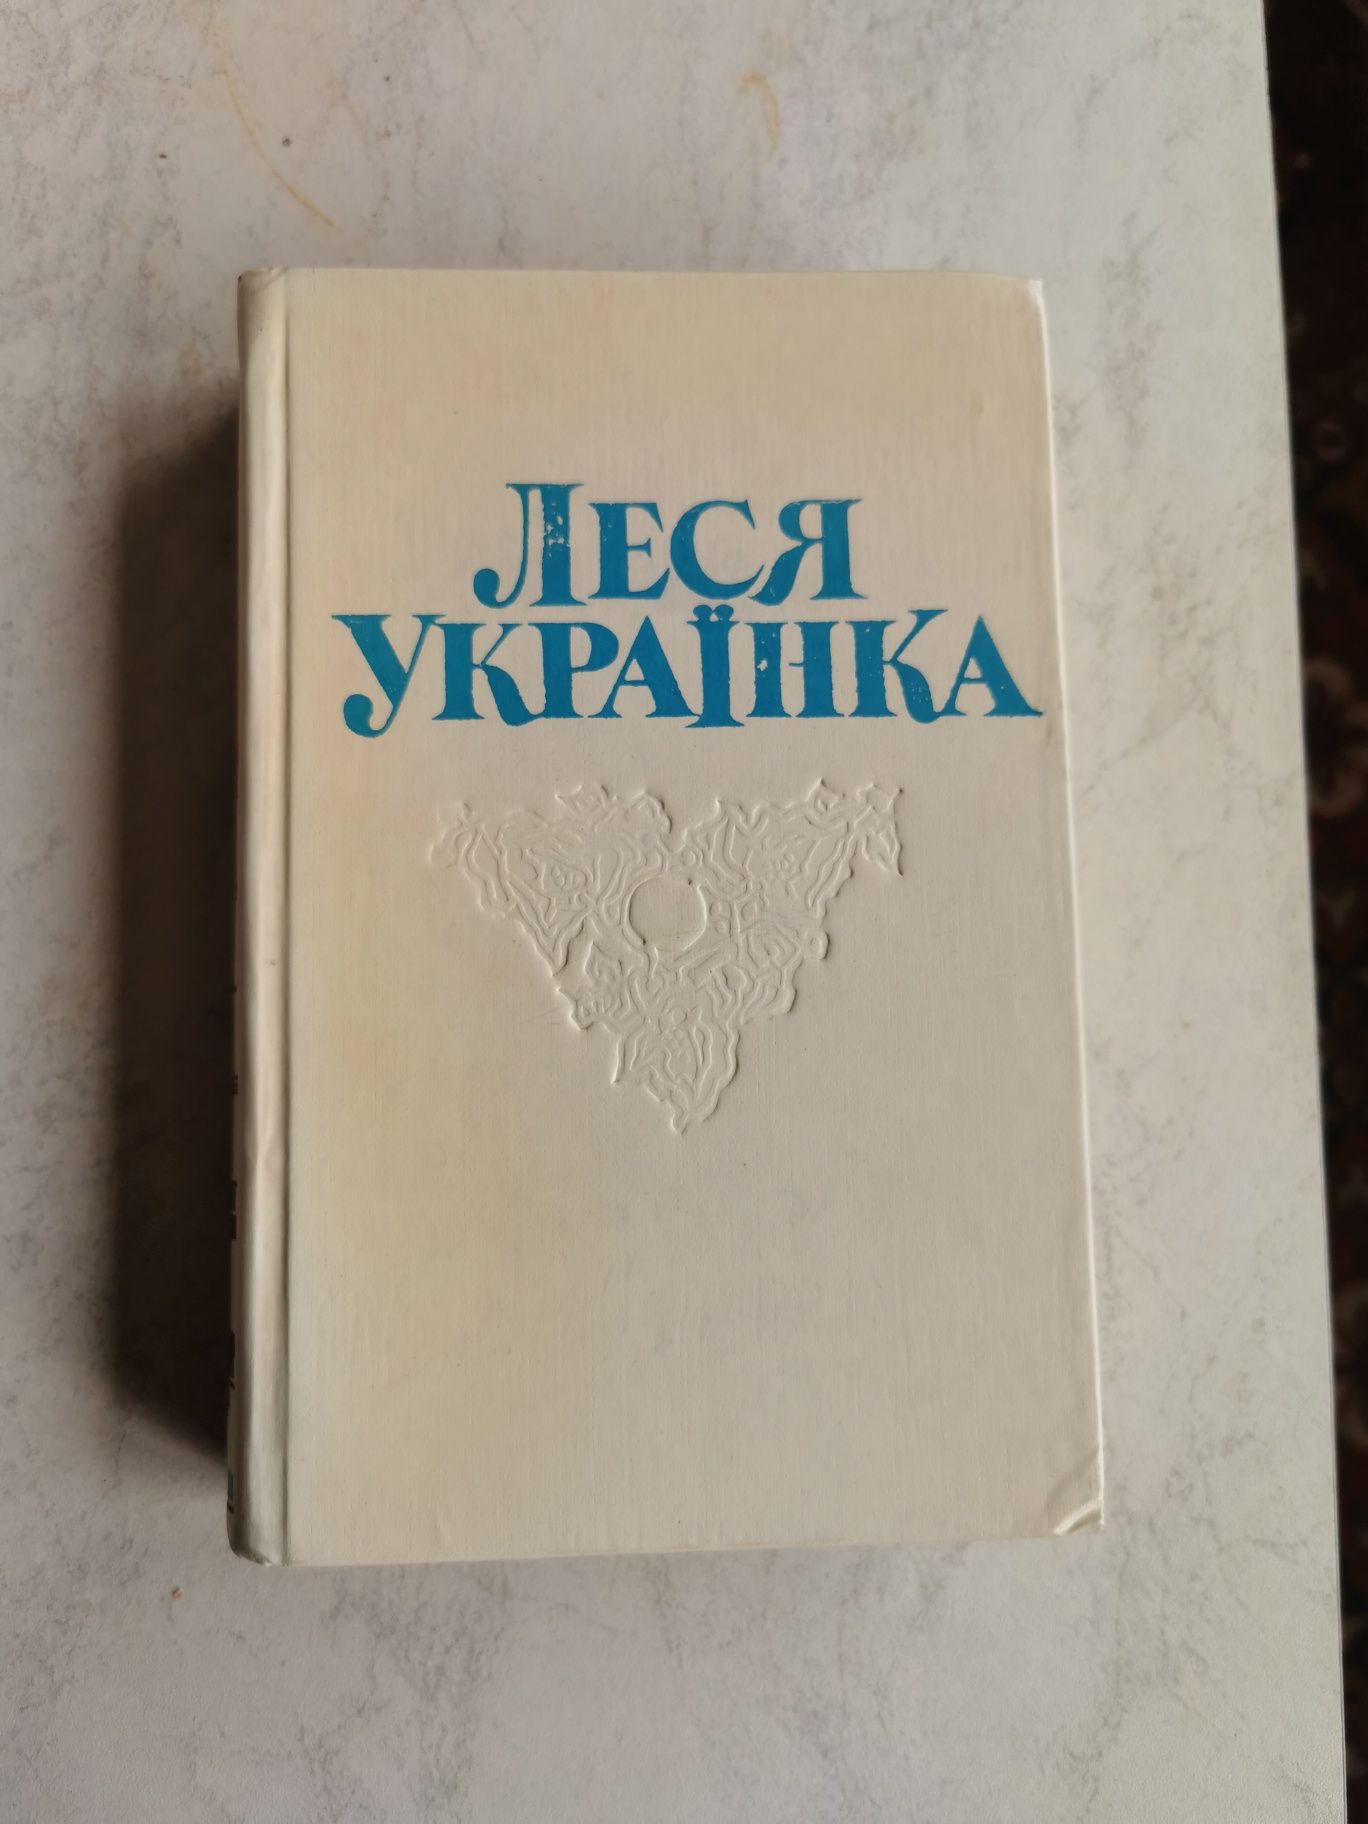 Продам збірник творів Лесі Українки в 4-х томах